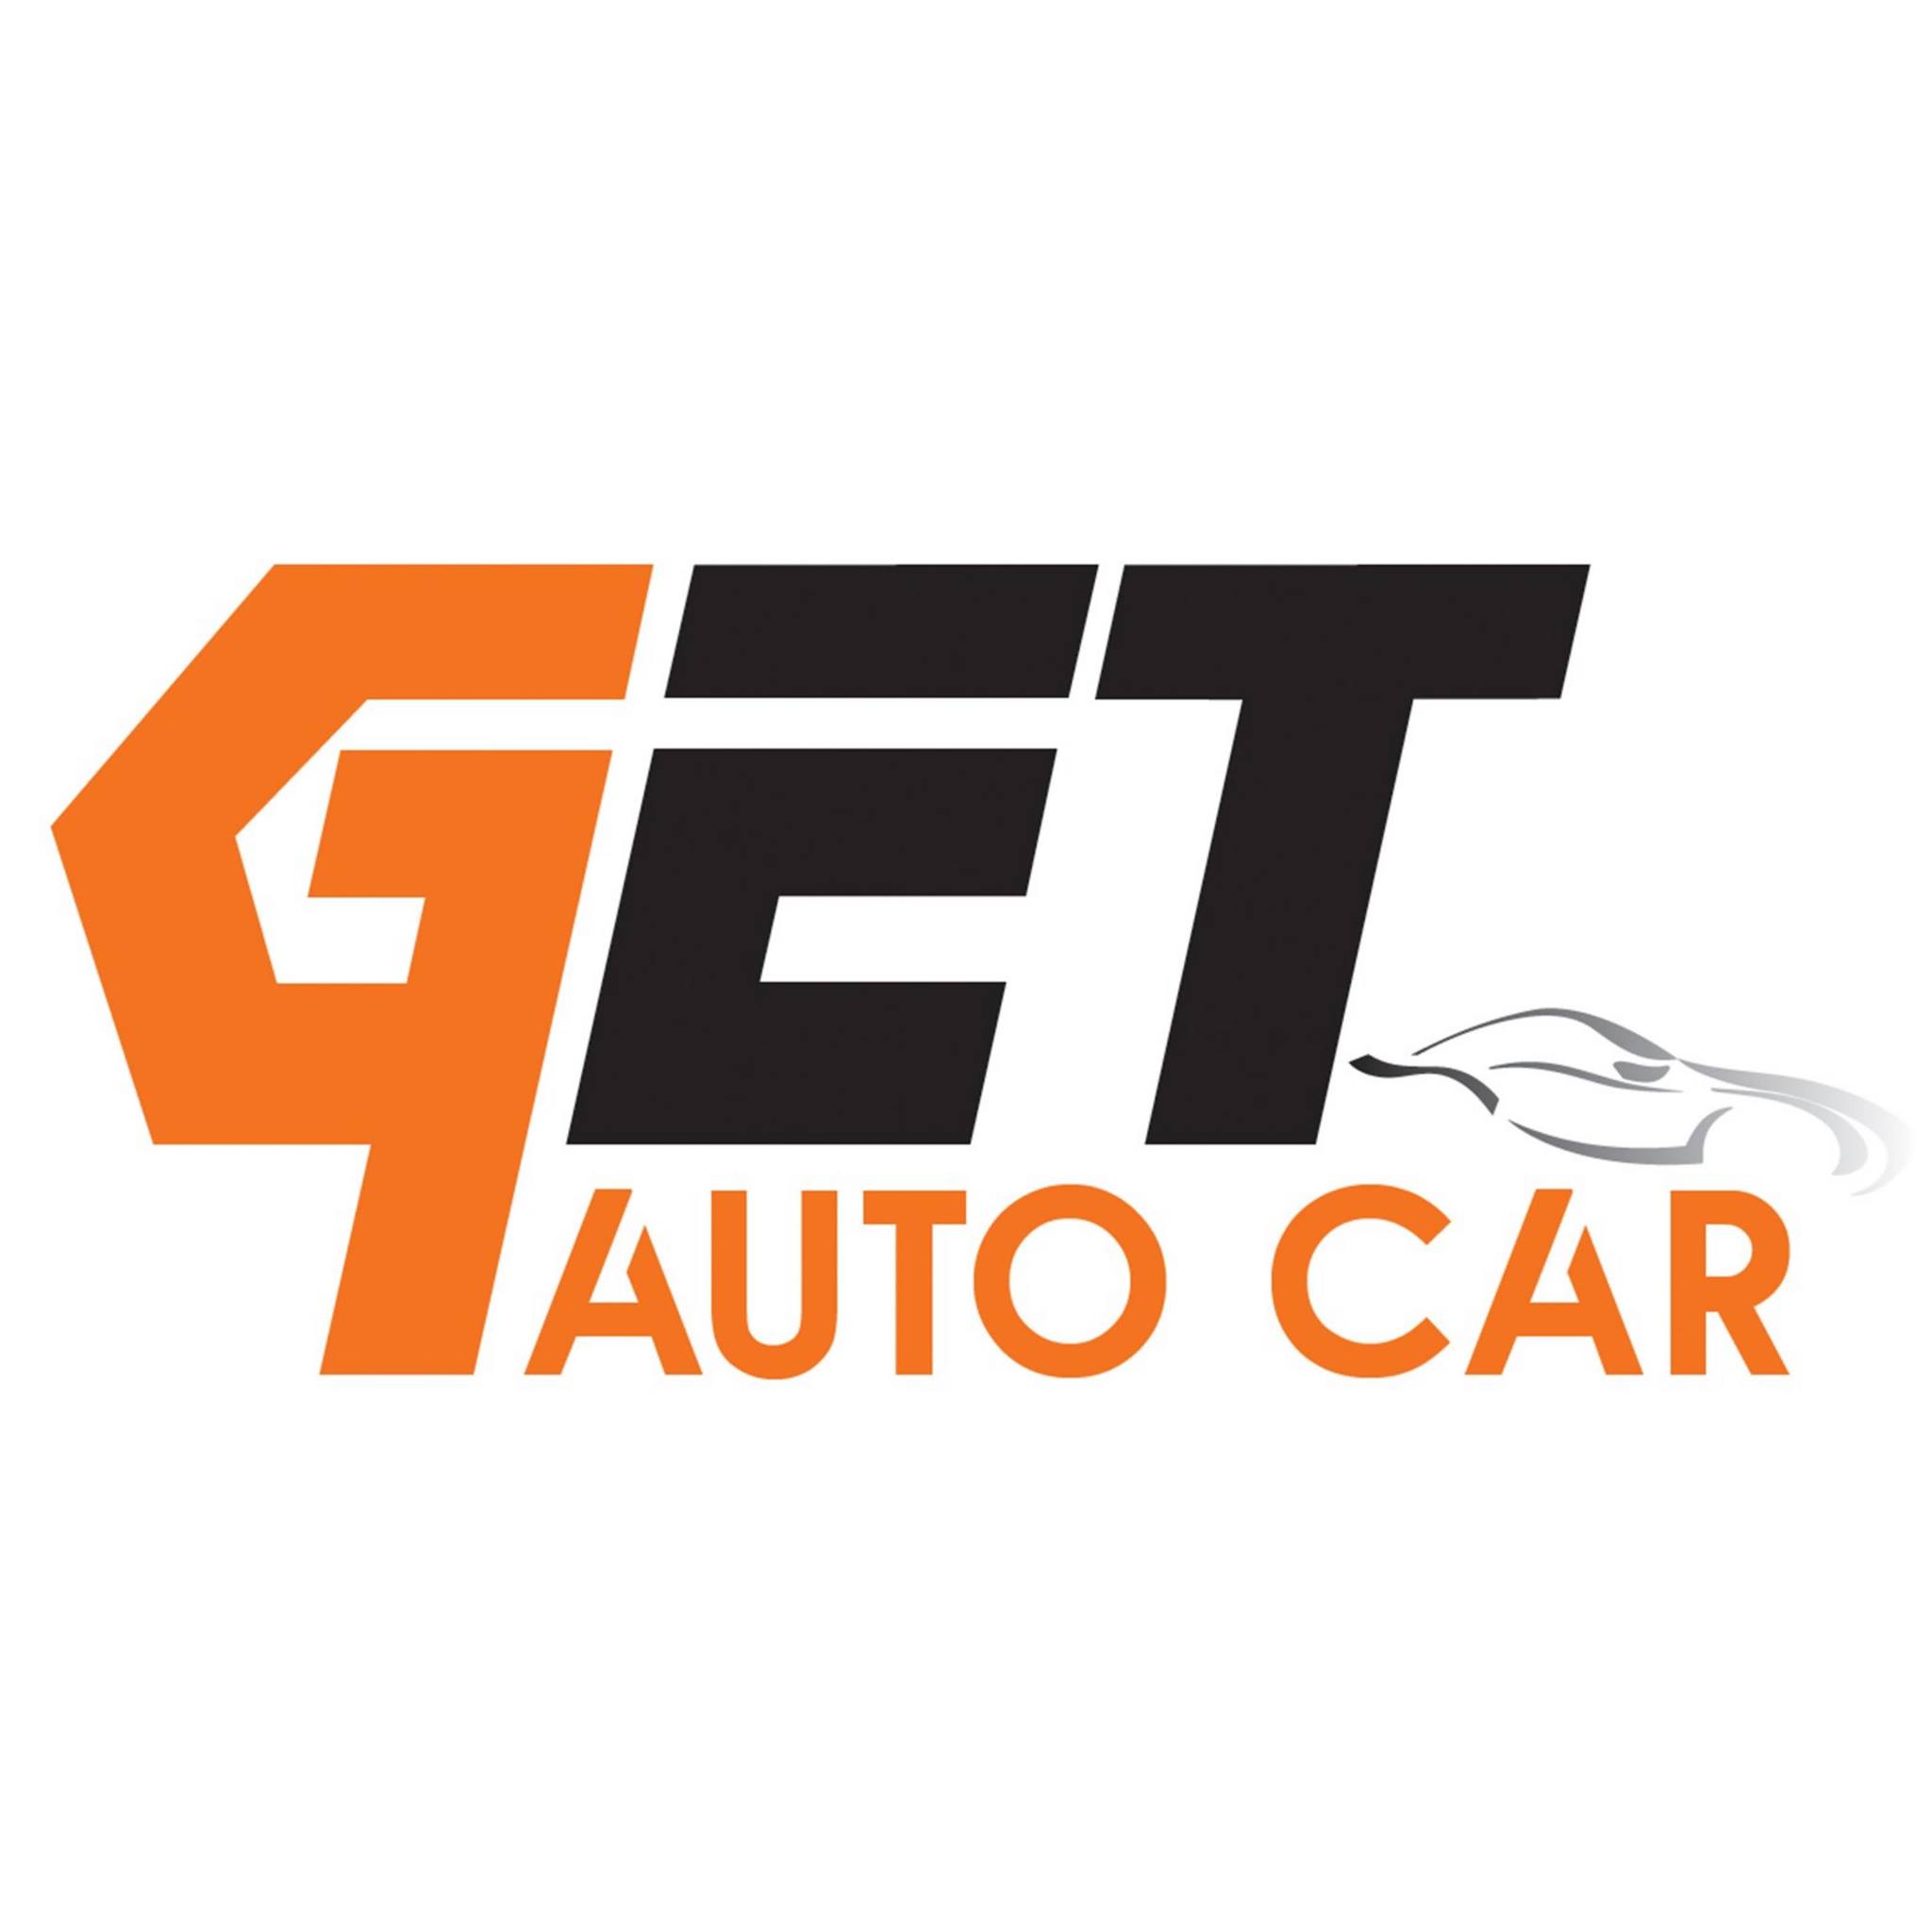 Get Auto Car